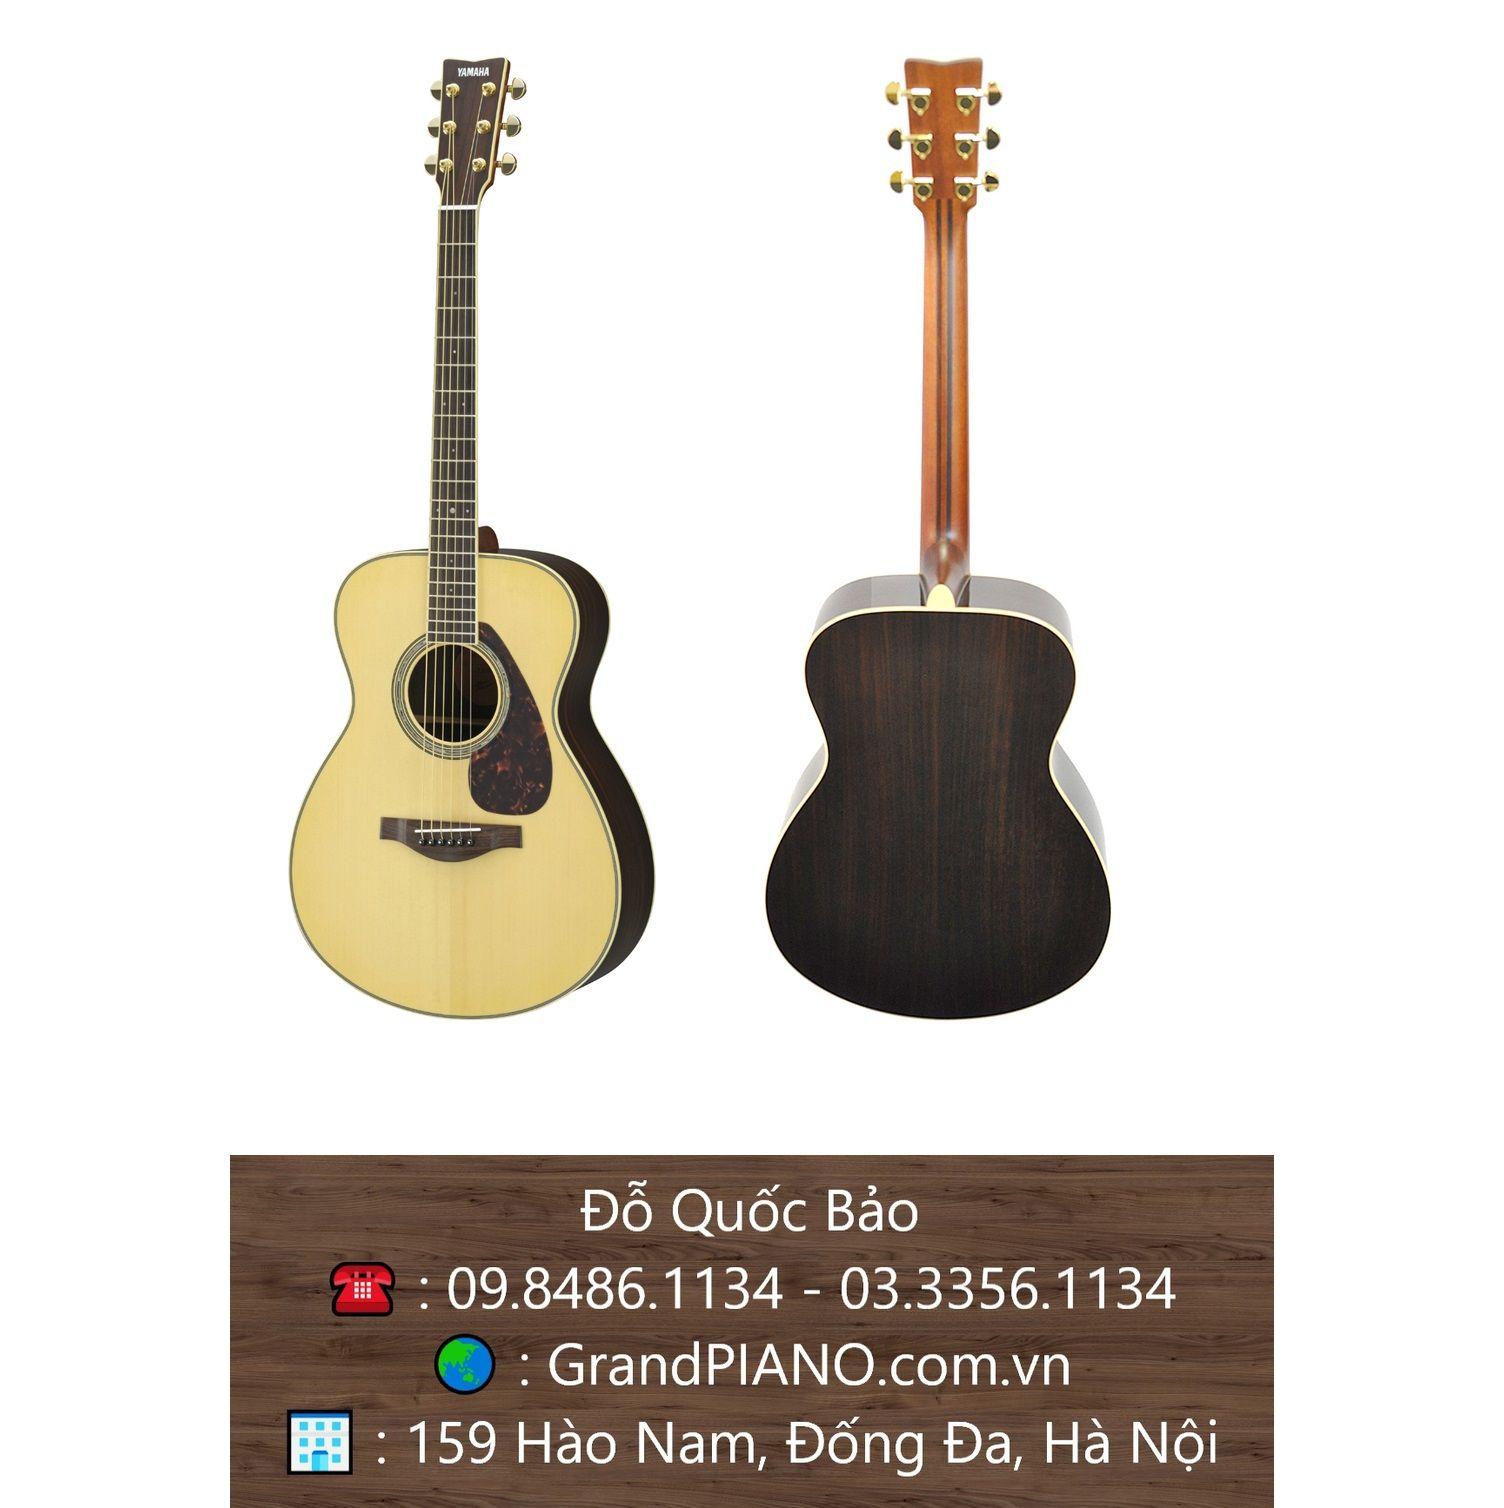 Đàn Guitar Yamaha Acoustic LS6 ARE 